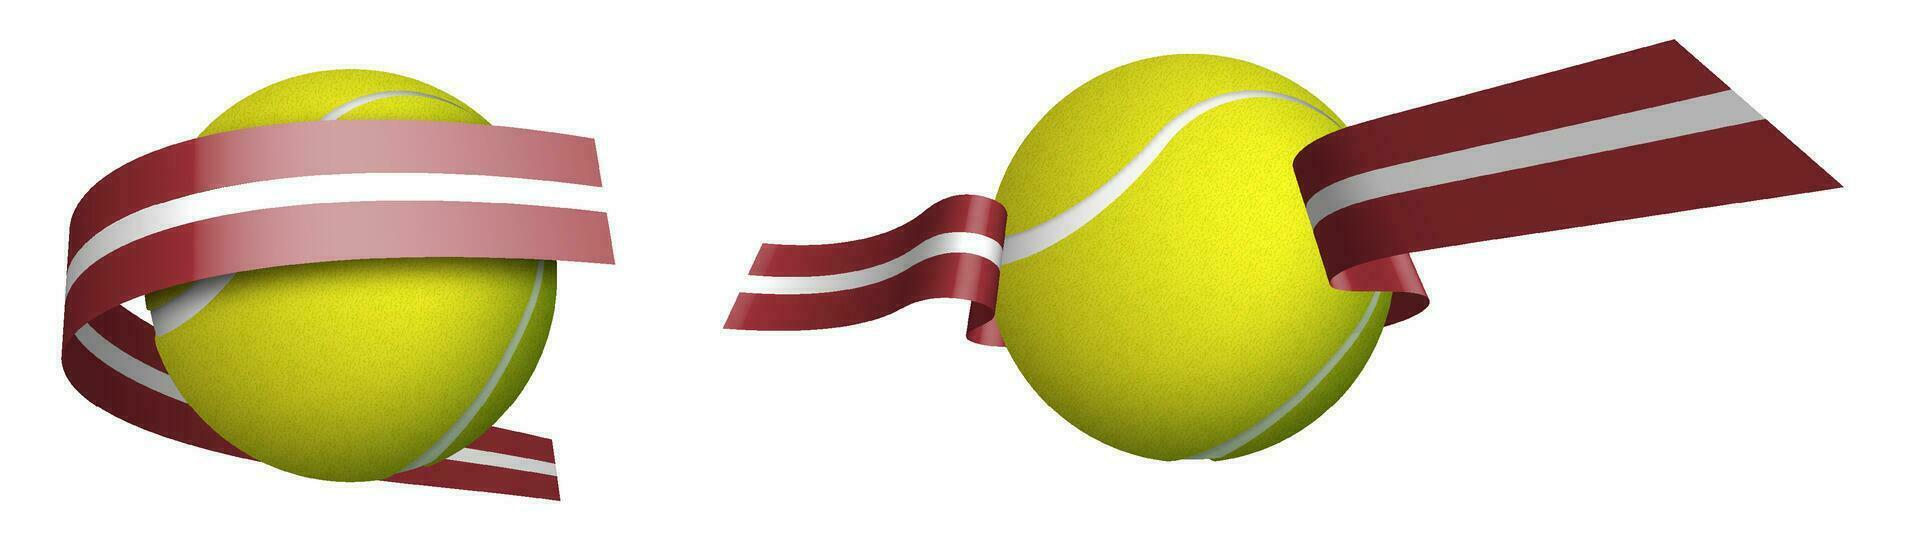 sporter tennis boll i band med färger av flagga av lettland. isolerat vektor på vit bakgrund